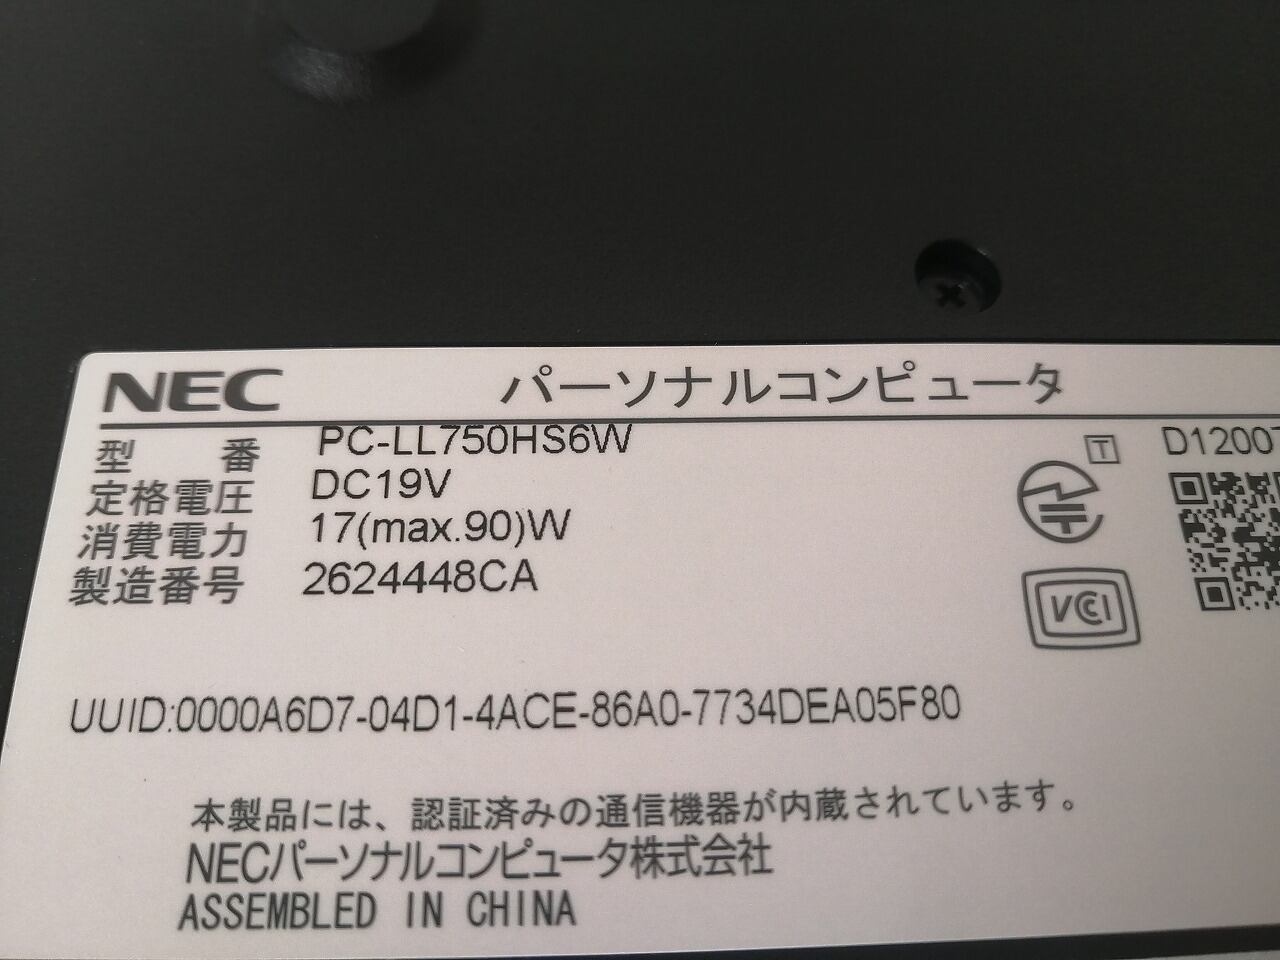 ❤新品SSD★大容量1TB★Core-i7★メモリ8G★最強音質★ブルーレイ★極